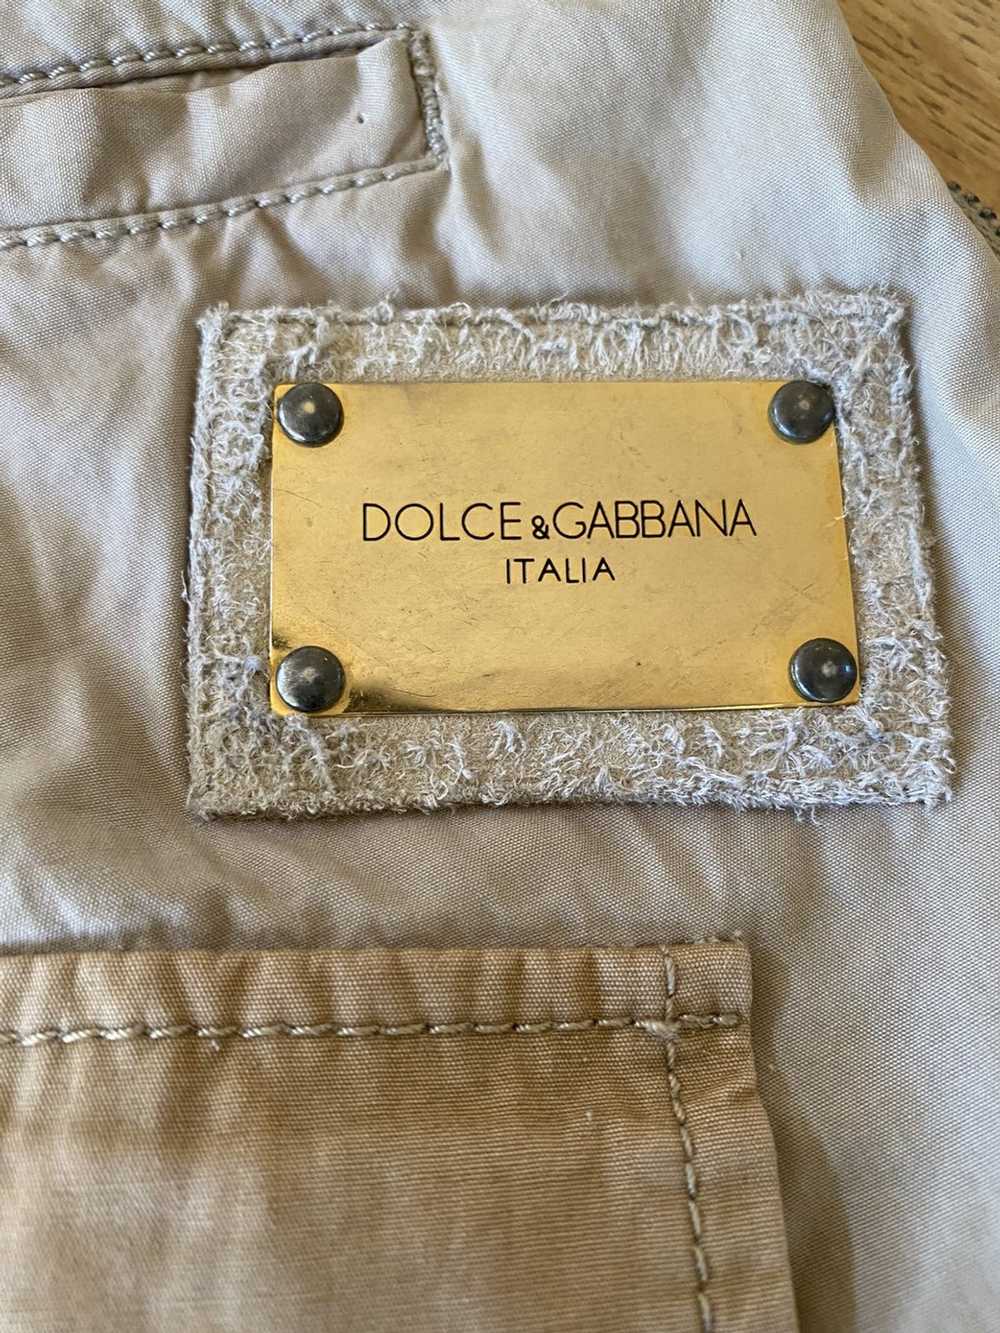 Dolce & Gabbana Dolce & Gabbana Cargo Pants - image 7